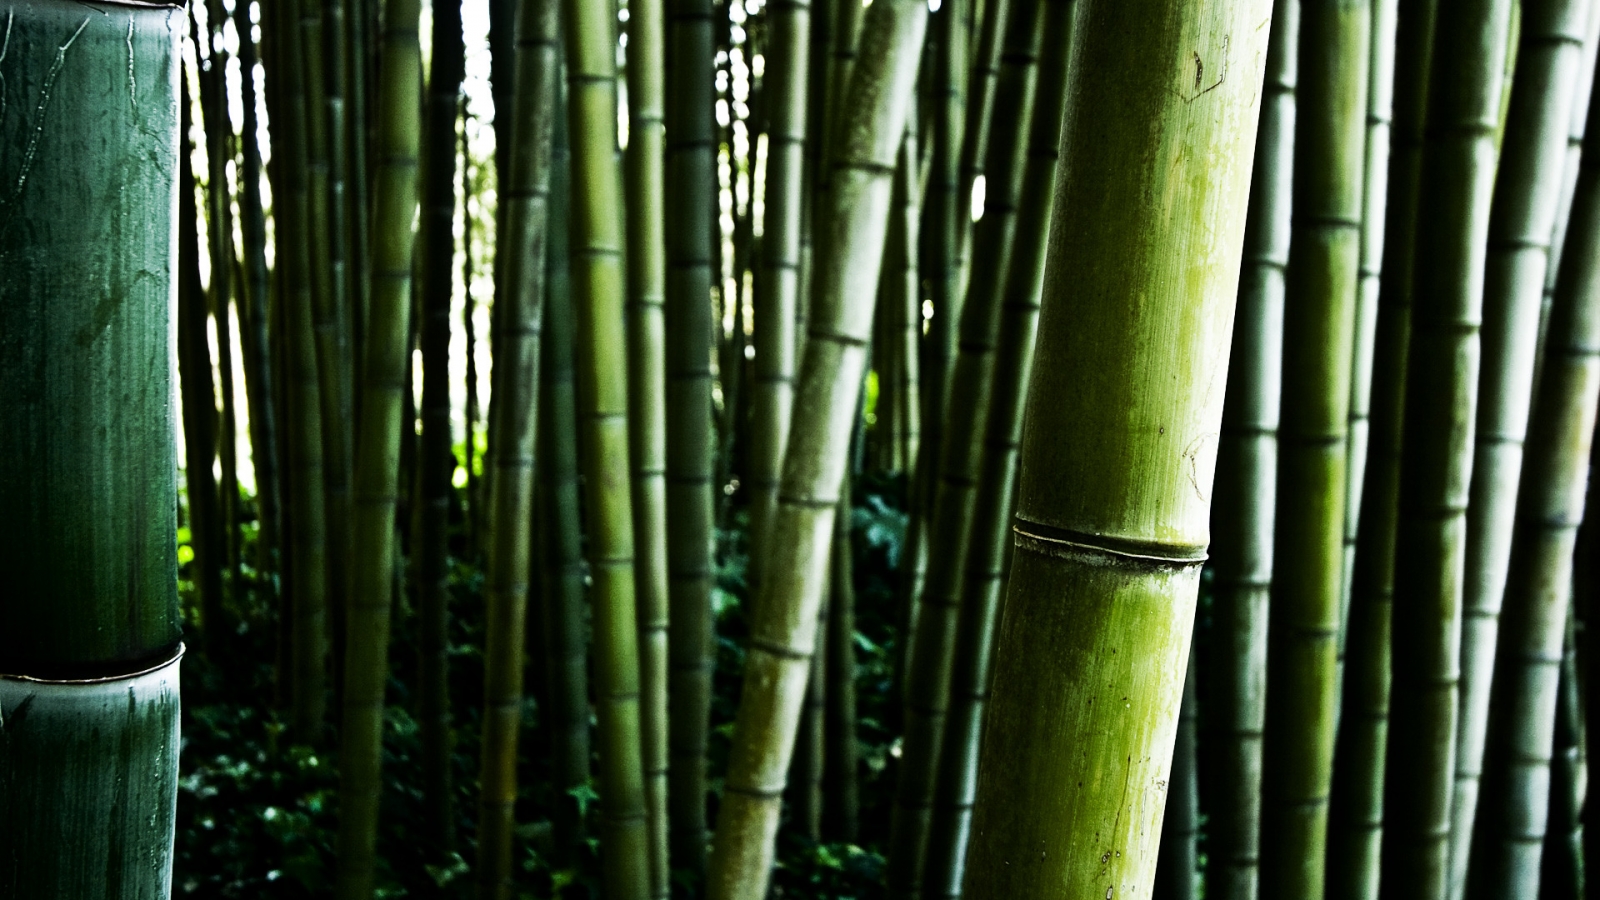 Bamboo stalks for 1600 x 900 HDTV resolution